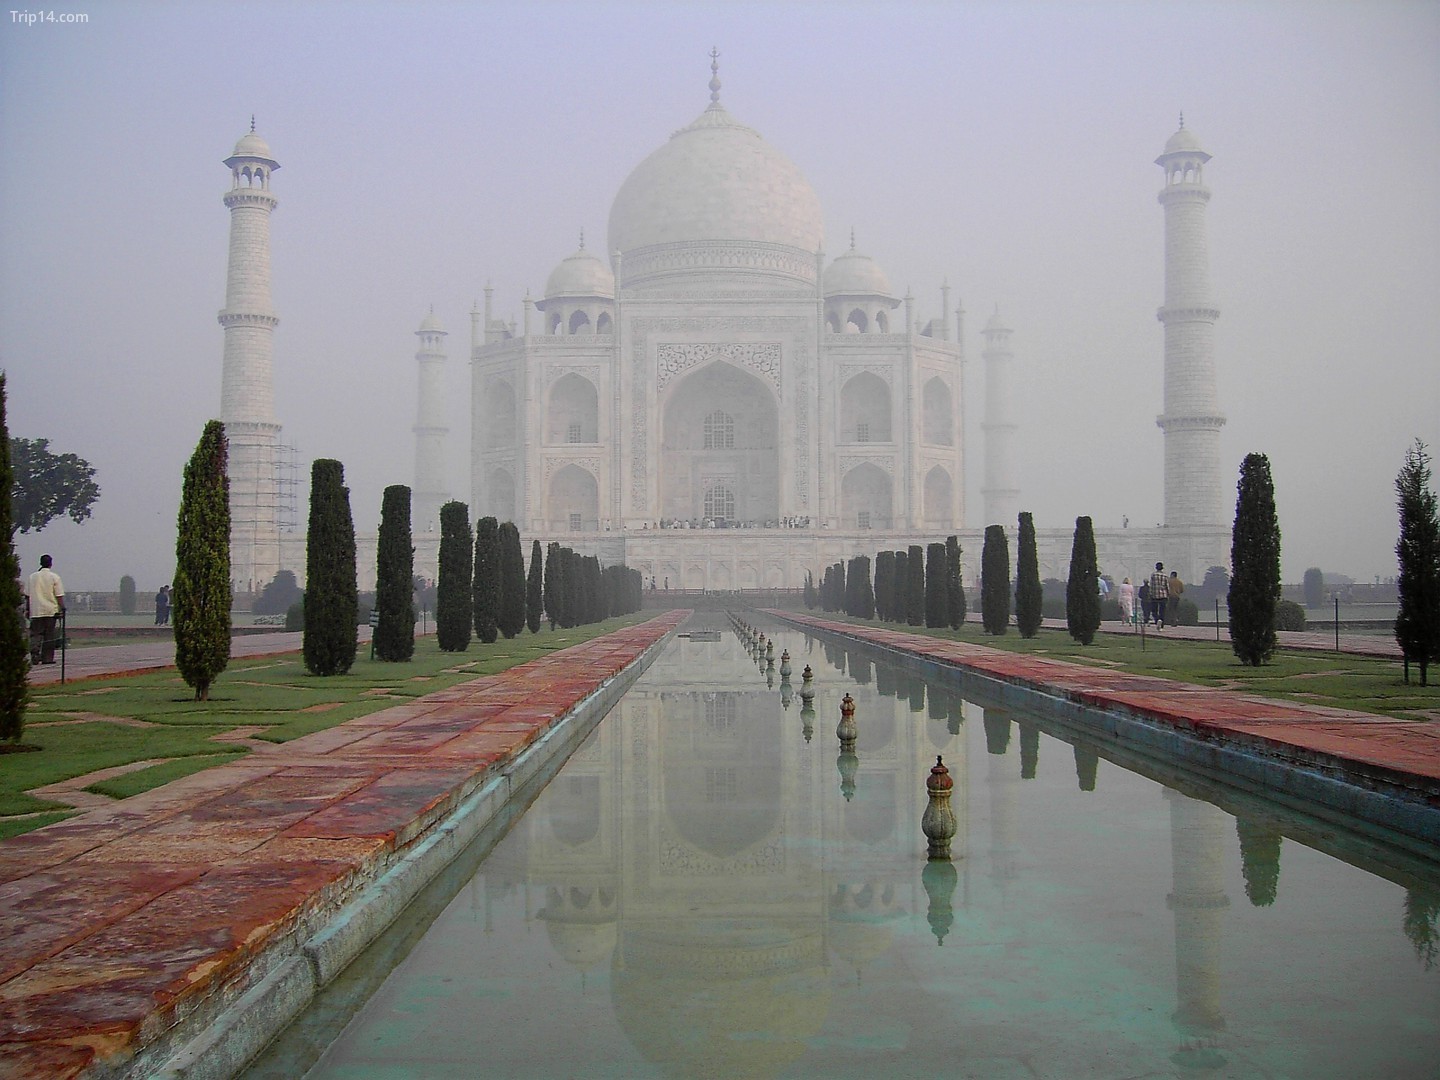  Taj Mahal lúc bình minh   |   